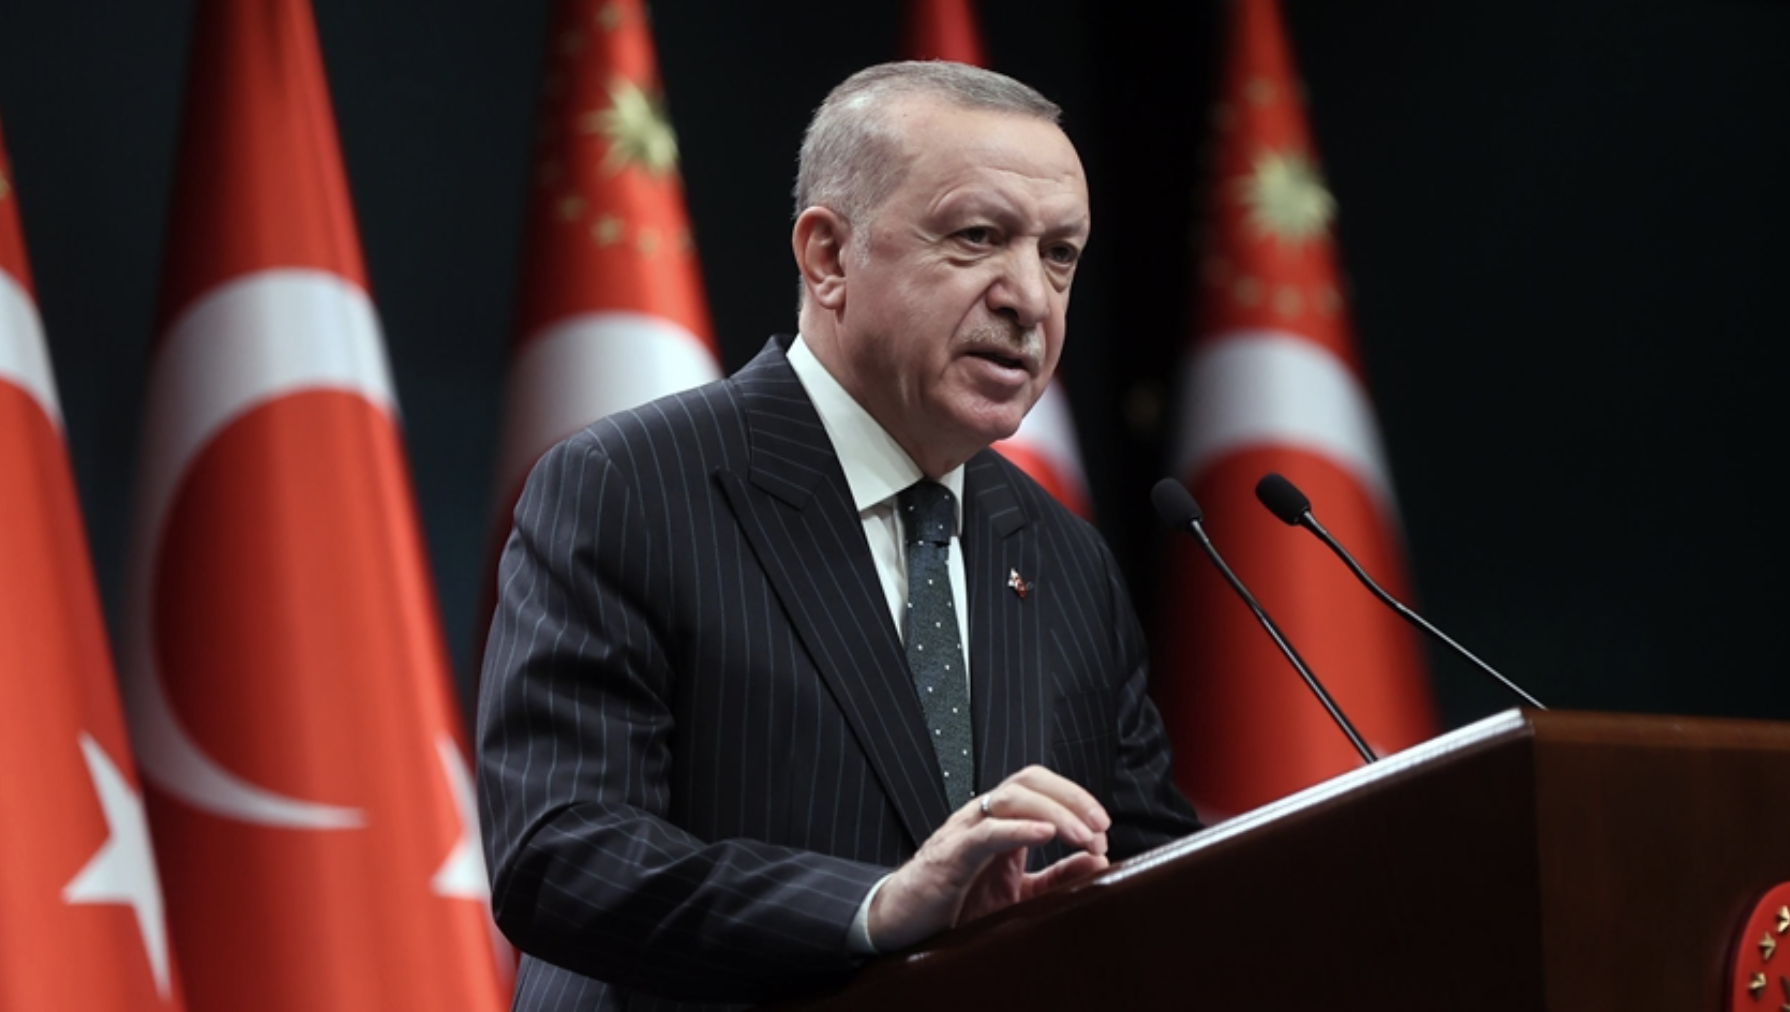 Ο Ερντογάν συνομιλεί για την ΕΕ, τη Λιβύη, το Τουρκικό Συμβούλιο και νέα περιοριστικά μέτρα μετά τη συνεδρίαση του Υπουργικού Συμβουλίου